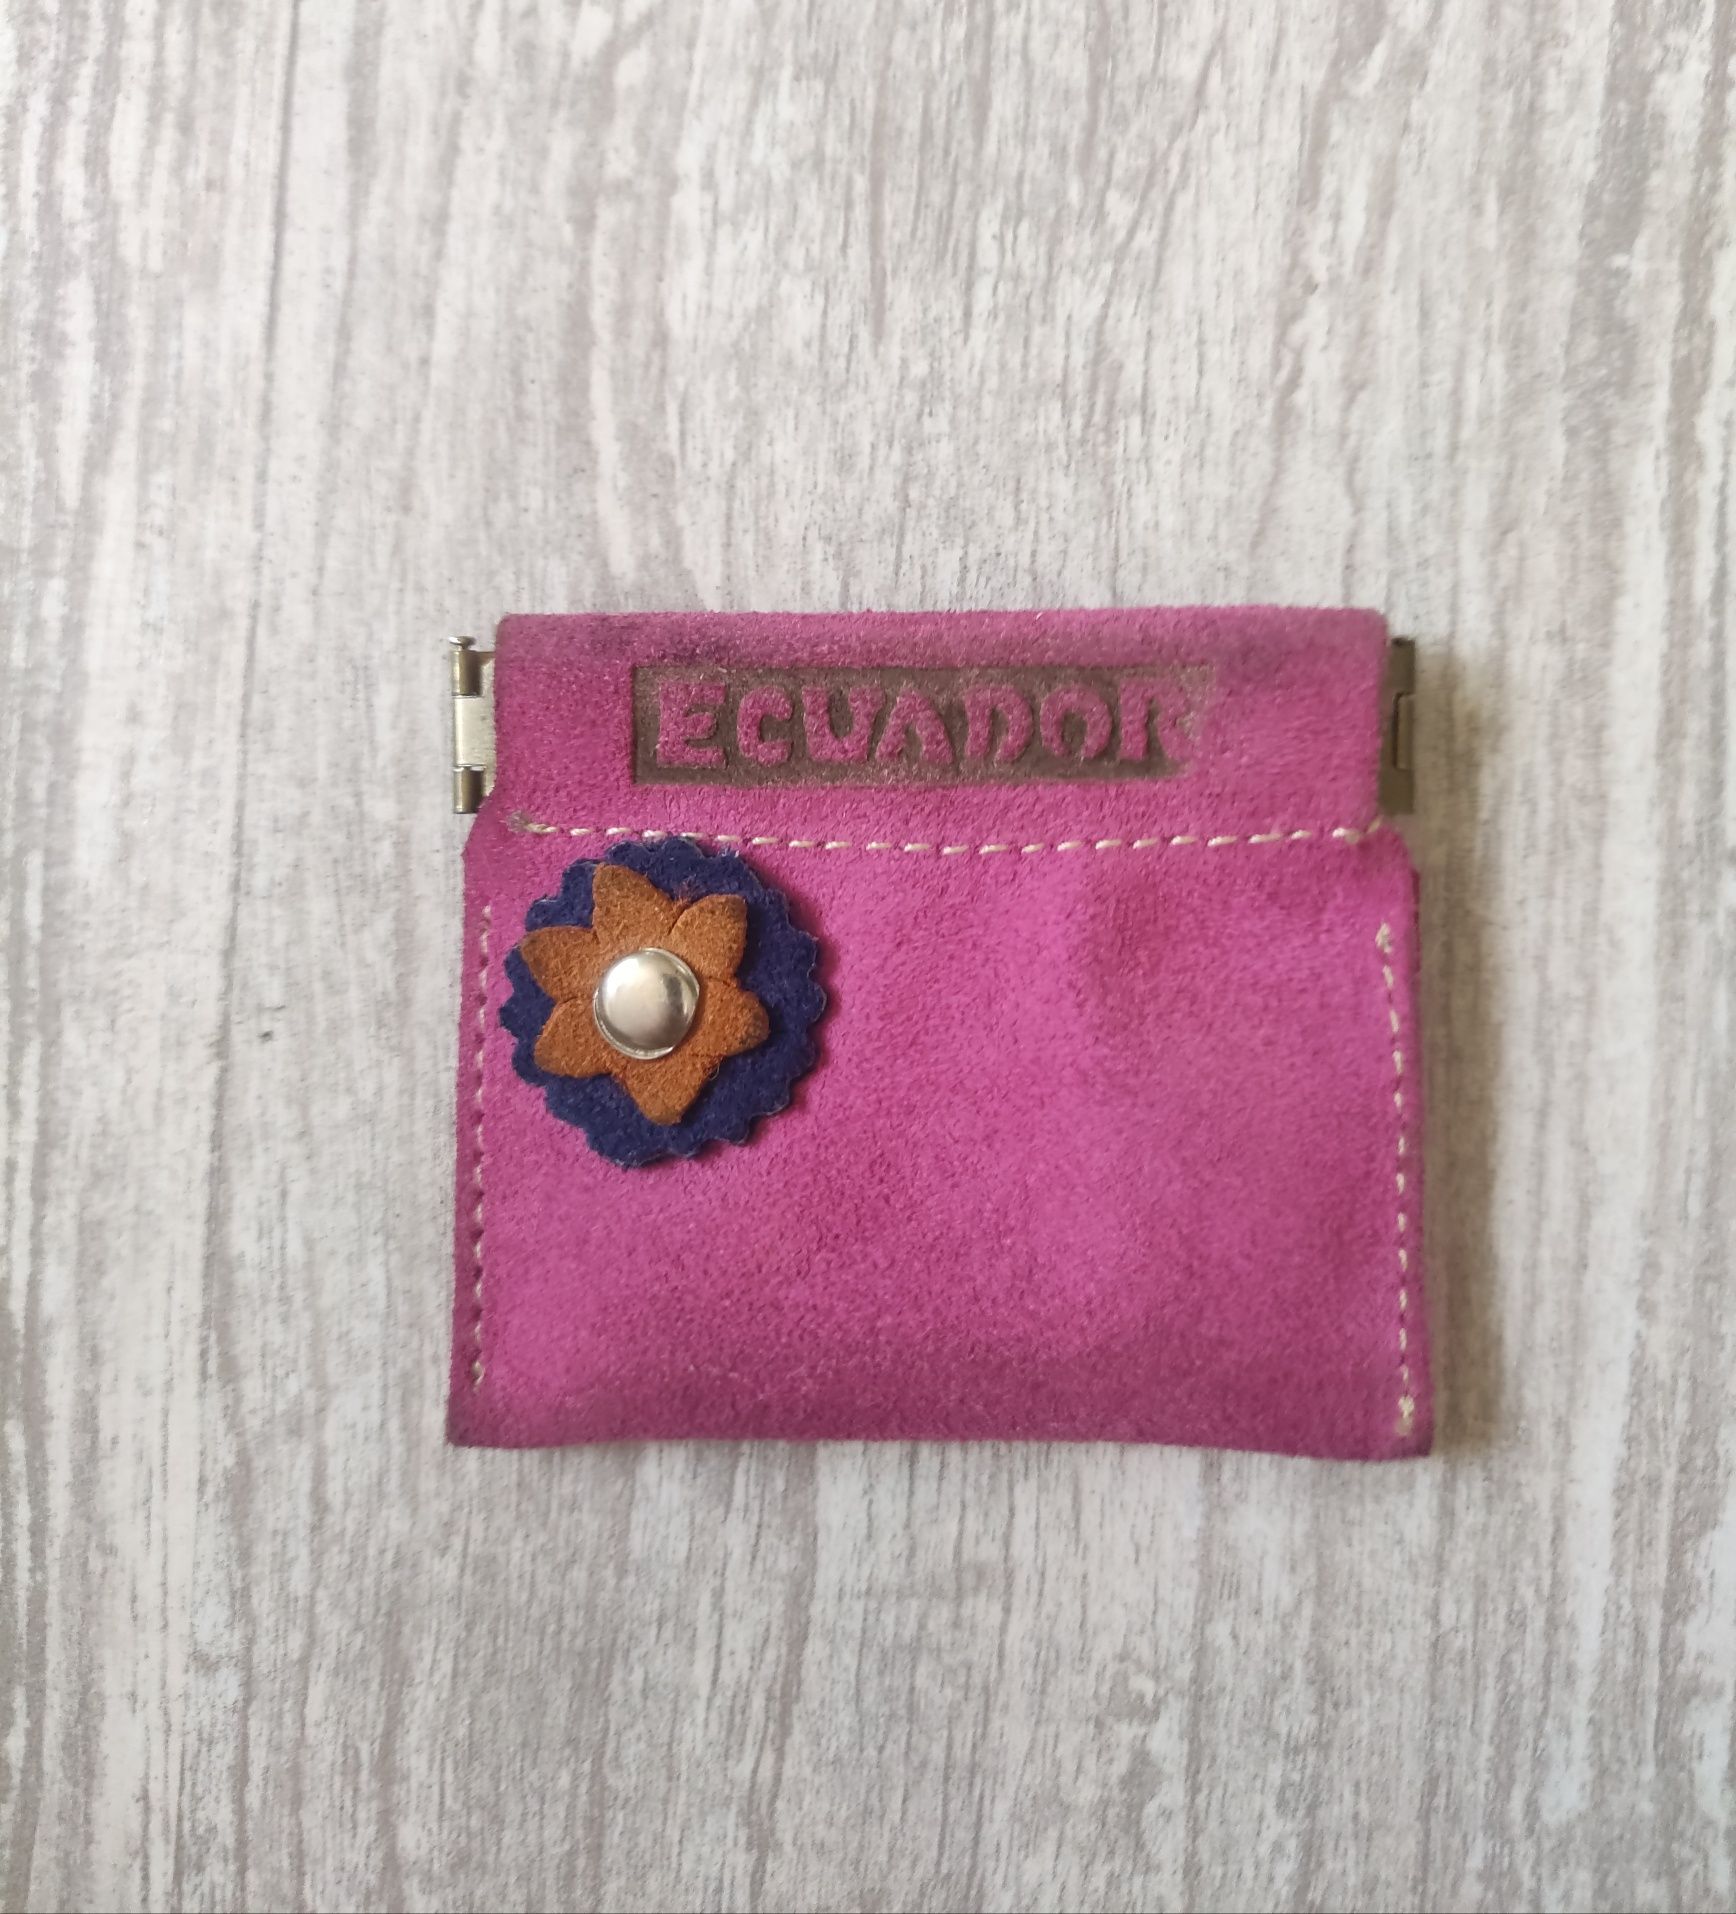 Portfel, saszetka, różowa, rękodzieło Ekwador